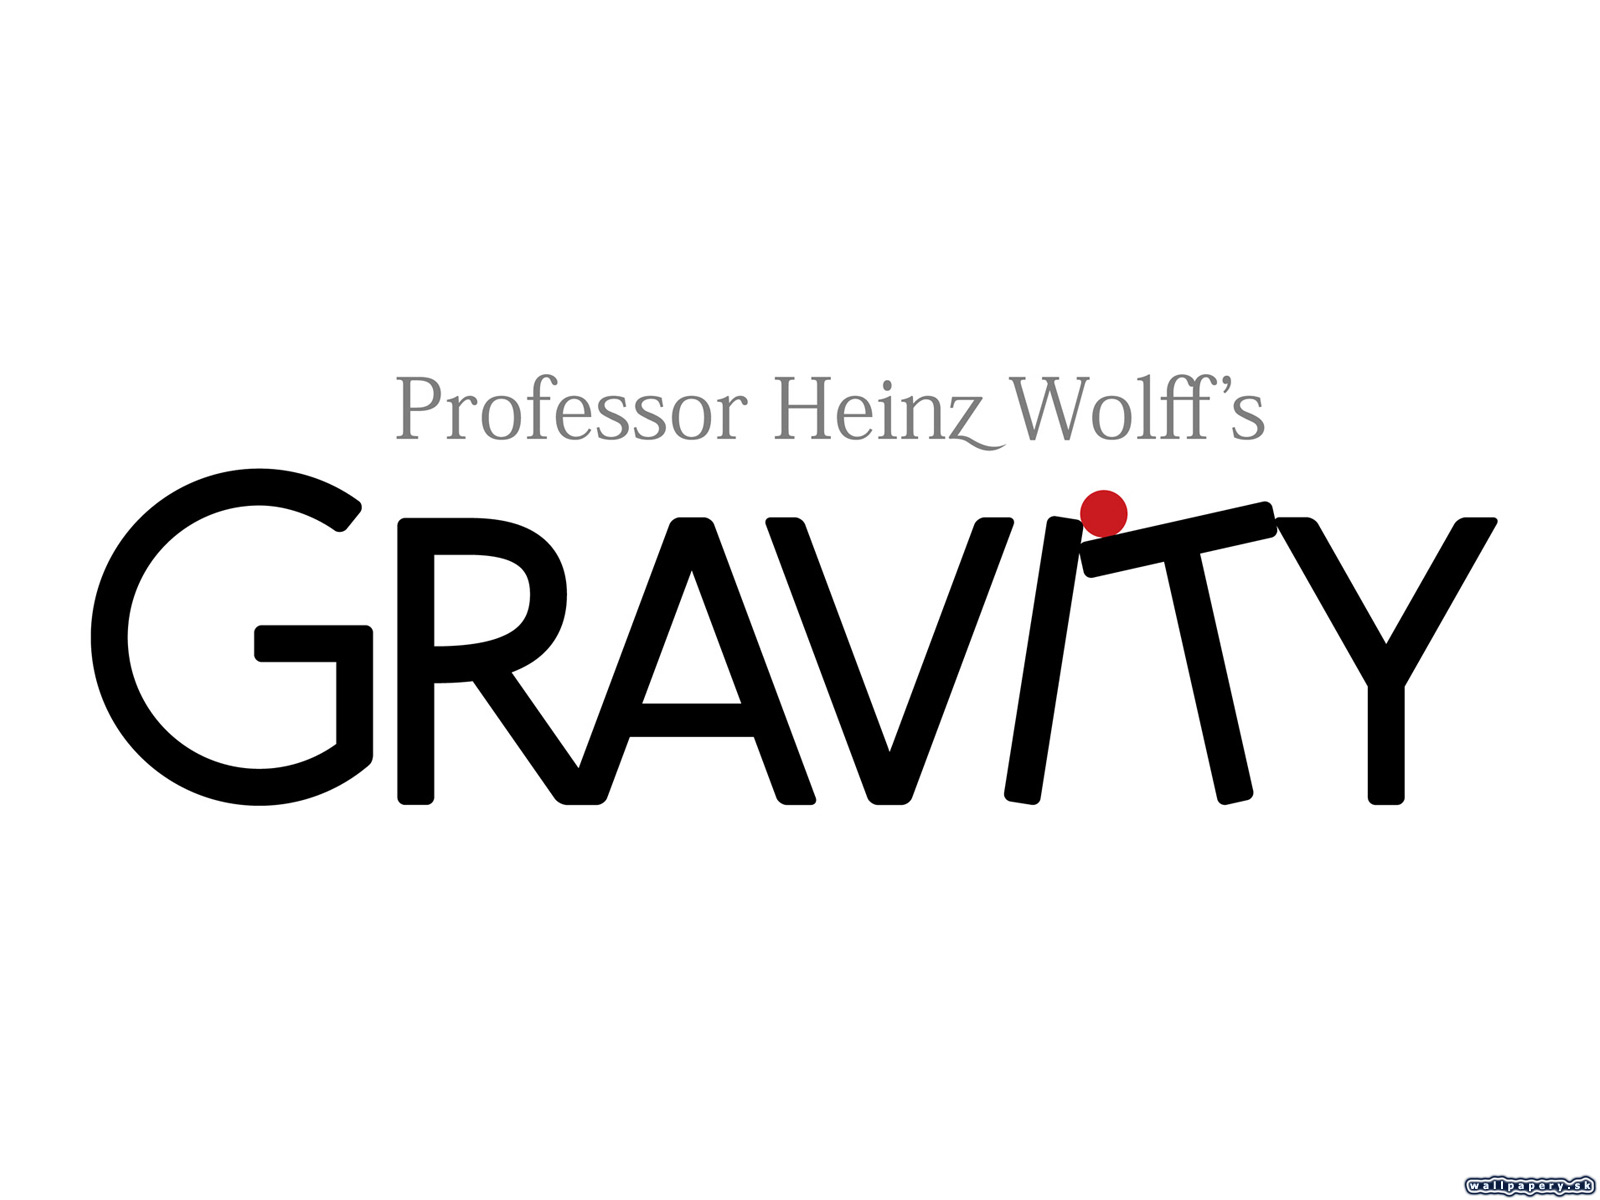 Professor Heinz Wolff's Gravity - wallpaper 4